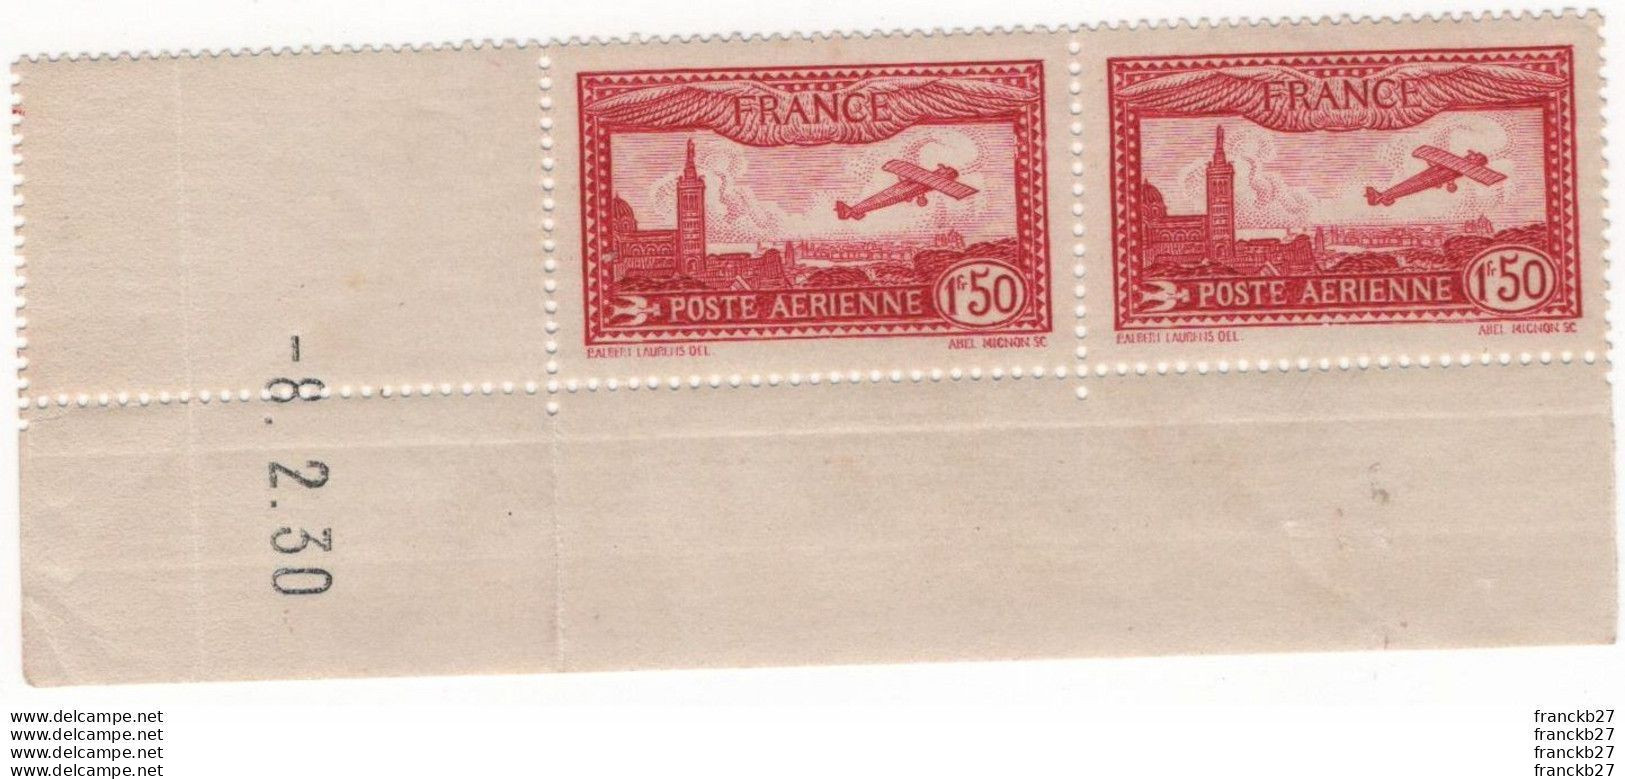 France Poste Aérienne - YT 5 - Avion Survolant Marseille 1 Fr 50 - Bloc De Deux Timbres Coins Datés - 1930 - 1927-1959 Mint/hinged